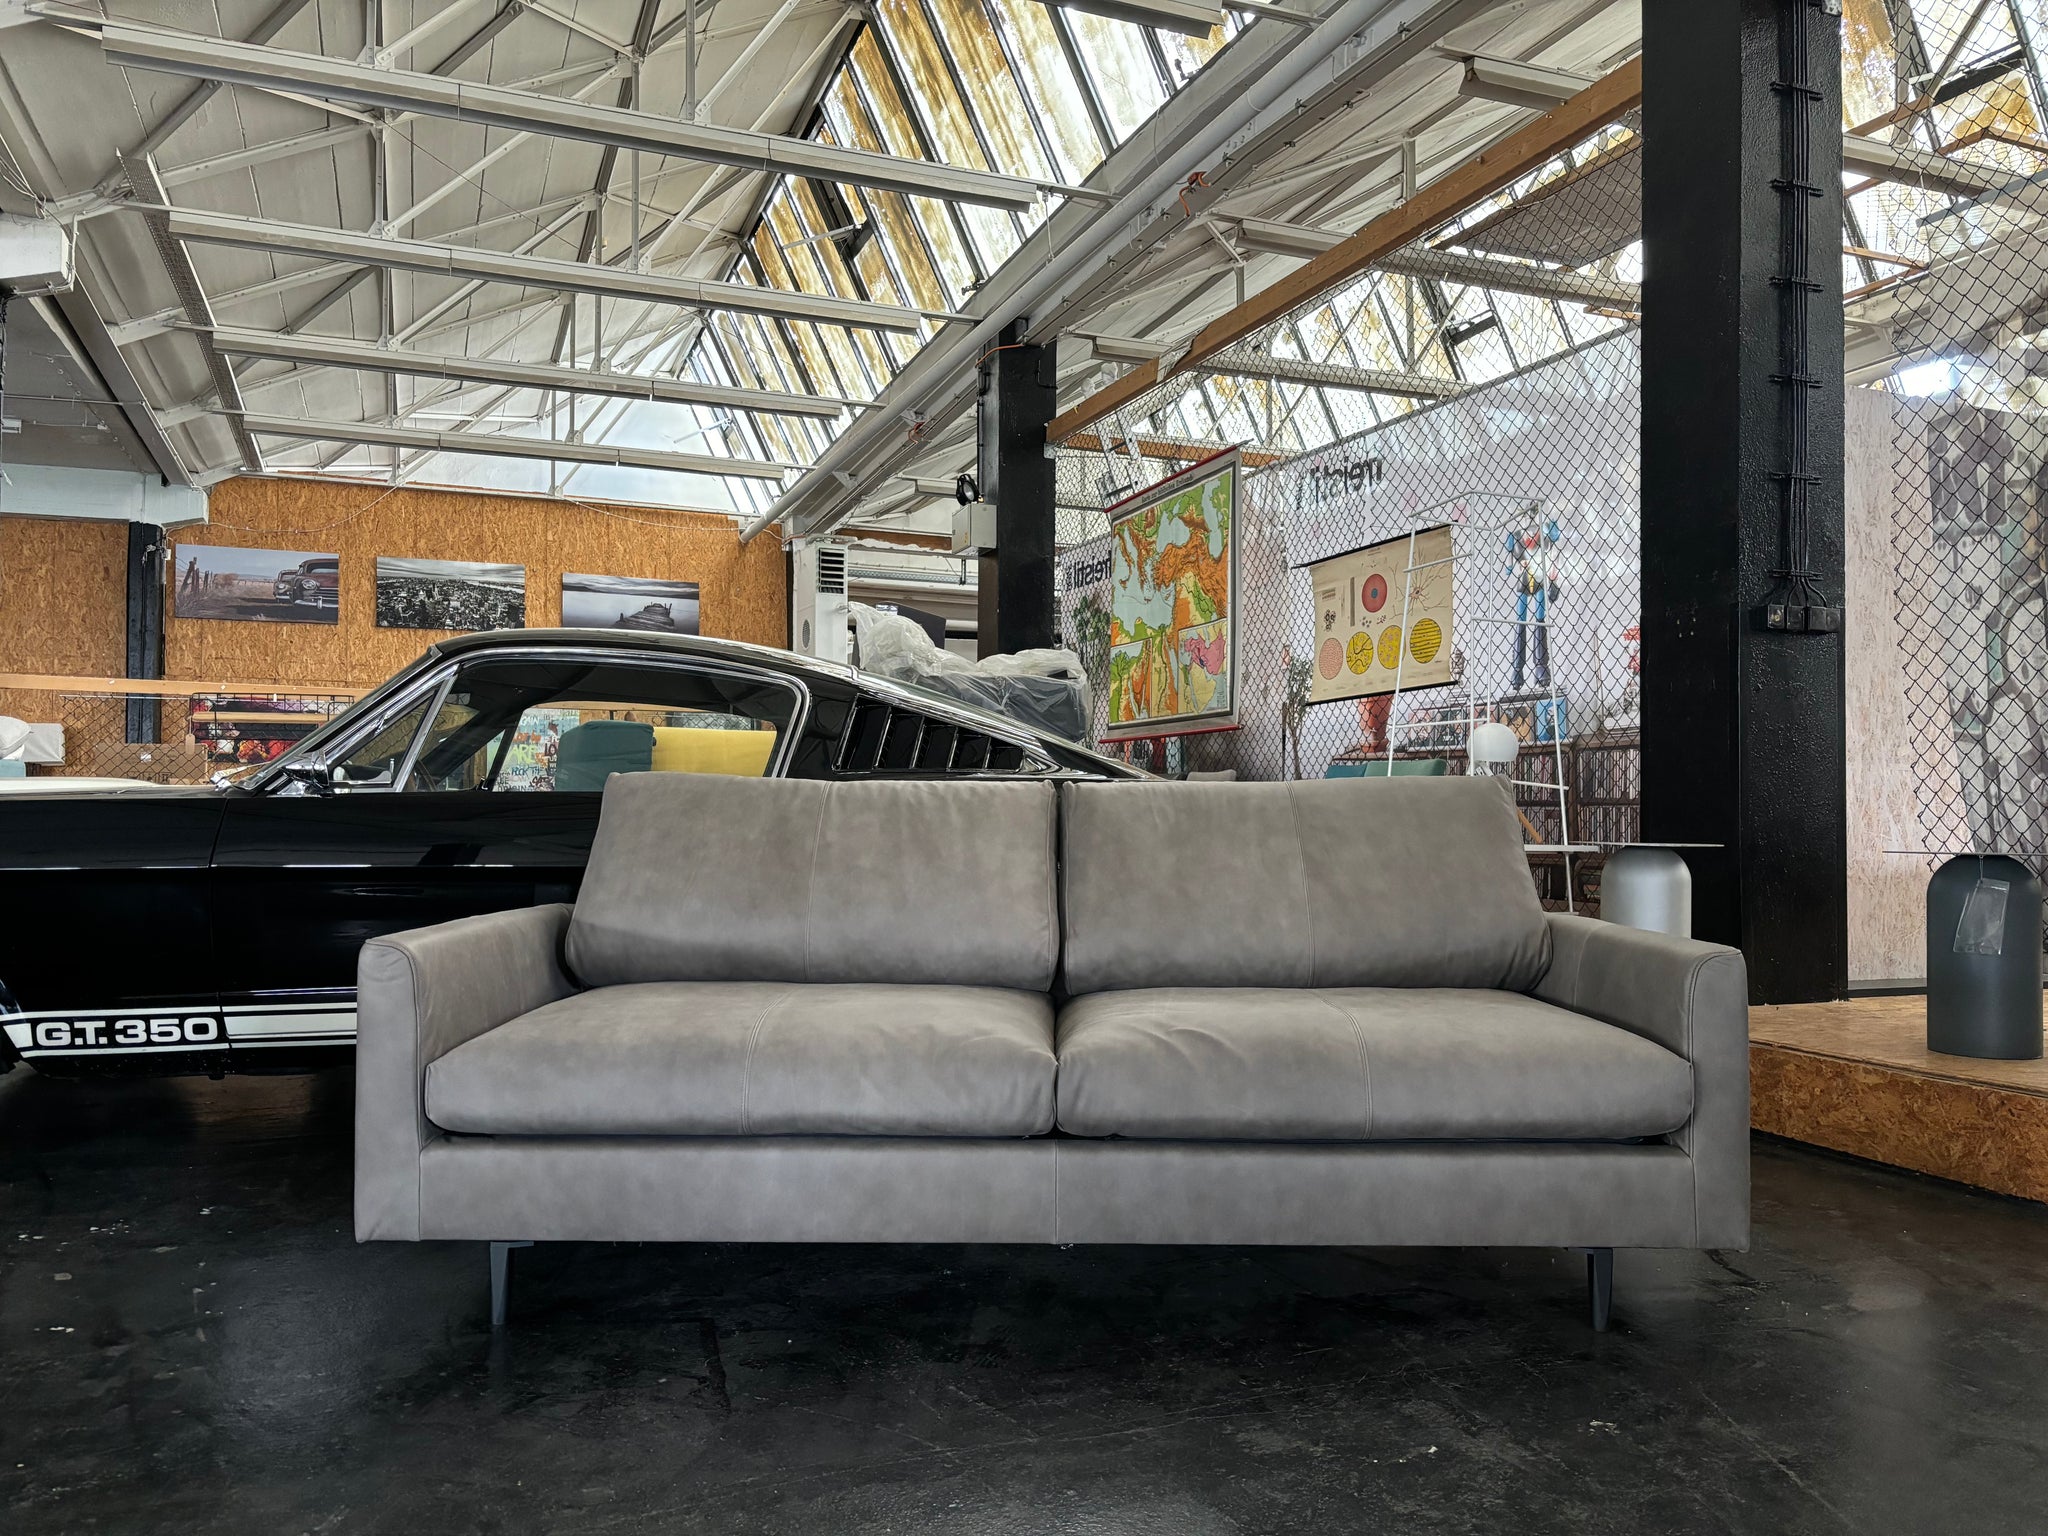 freistil - Sofa - freistil 134 - Leder braun - sofort verfügbar